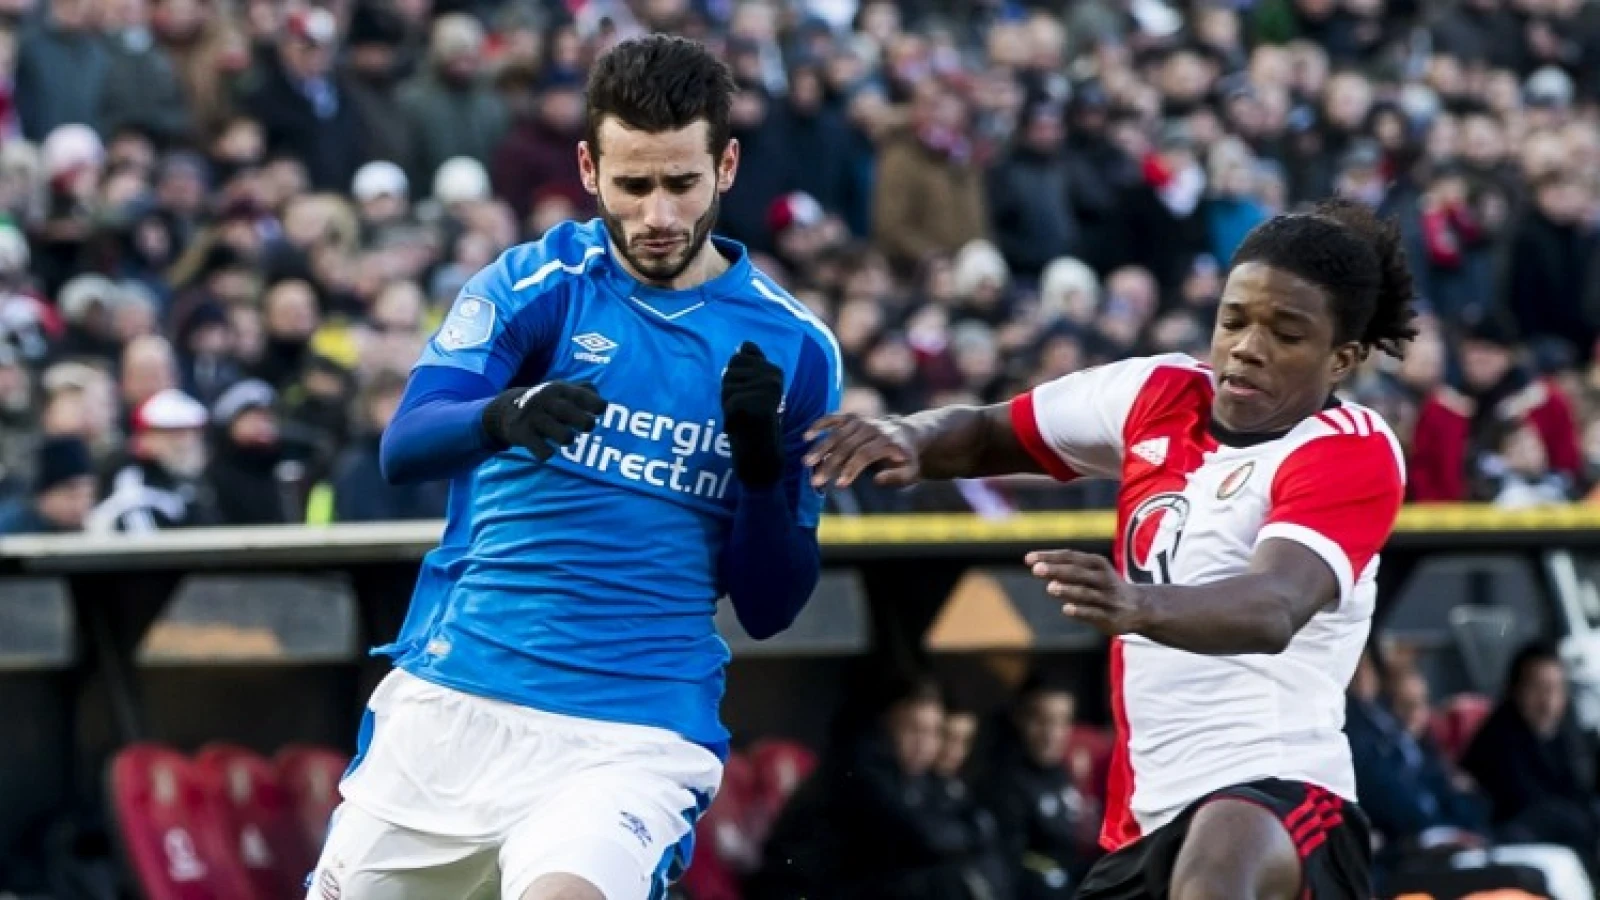 'Als de Feyenoorder hiervoor nog een kaart had gekregen was het helemaal te gek voor woorden geweest'